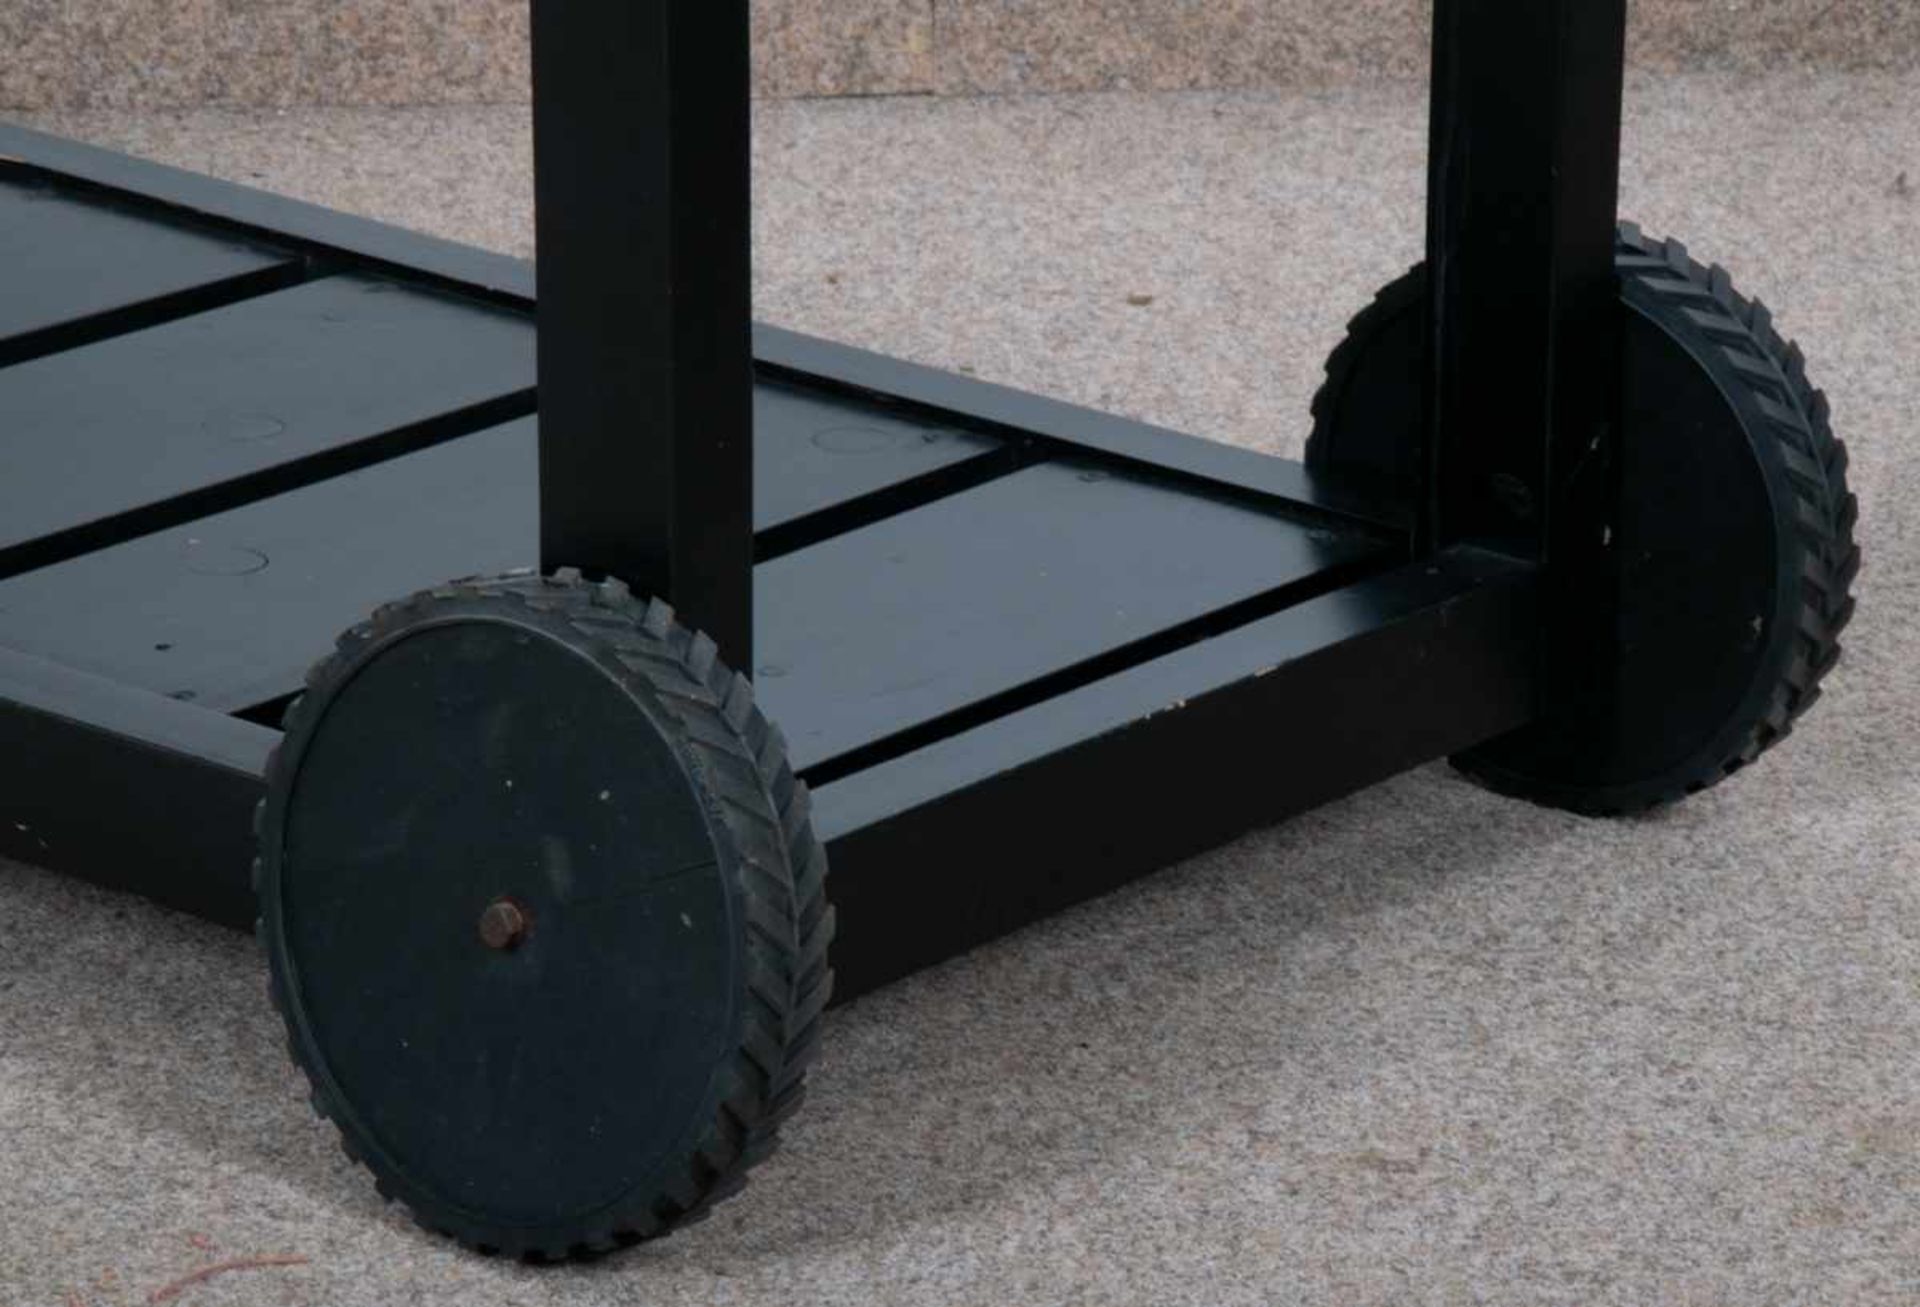 Rollbarer Gartentisch, schwarz lackiertes Nadelholz auf Kunststoffrollen gelagert/bedingt beweglich, - Bild 6 aus 6